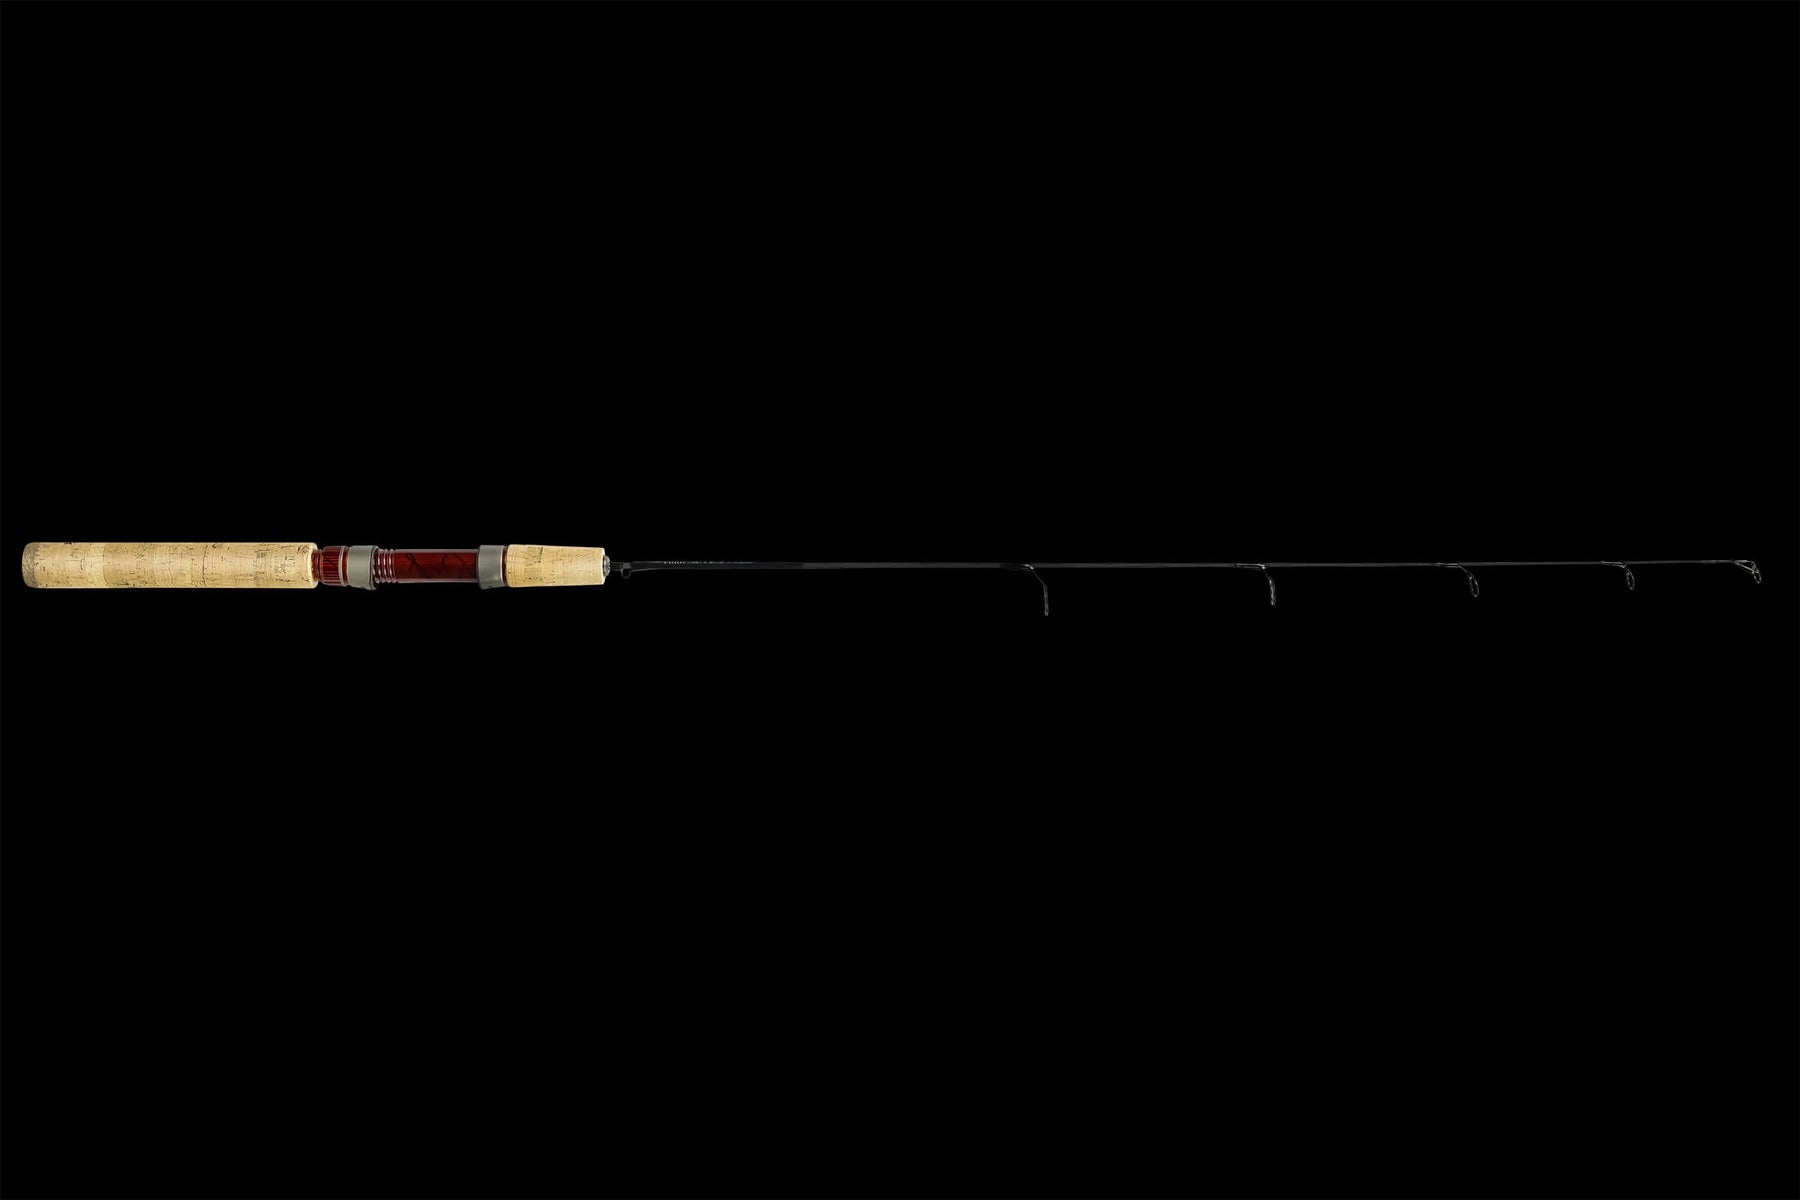 New Norsemen 5'9 Spinning Medium Light Fishing Rod, 1 - Baker's